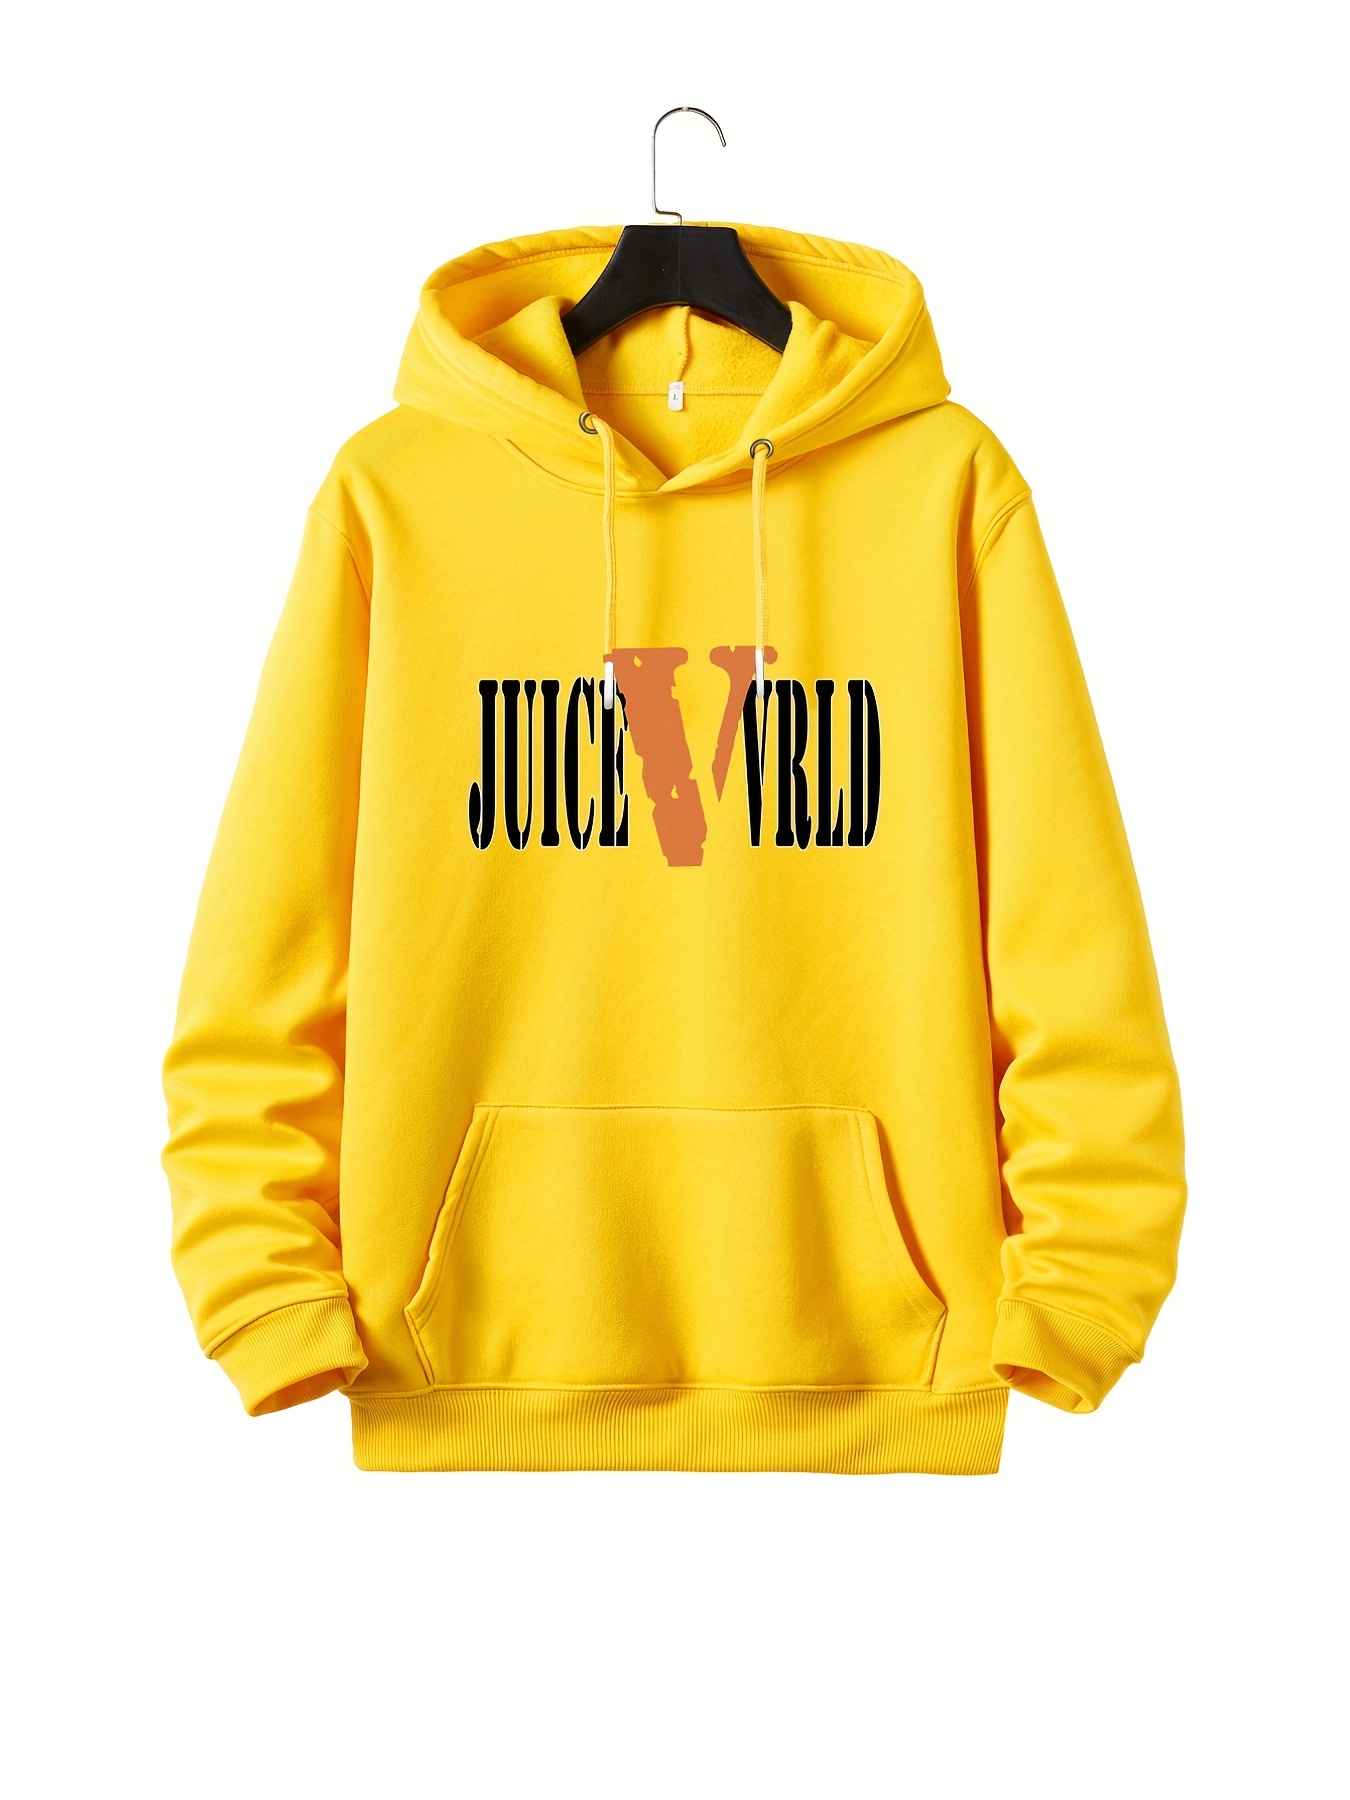 juice wrld clothing from temu｜TikTok Search